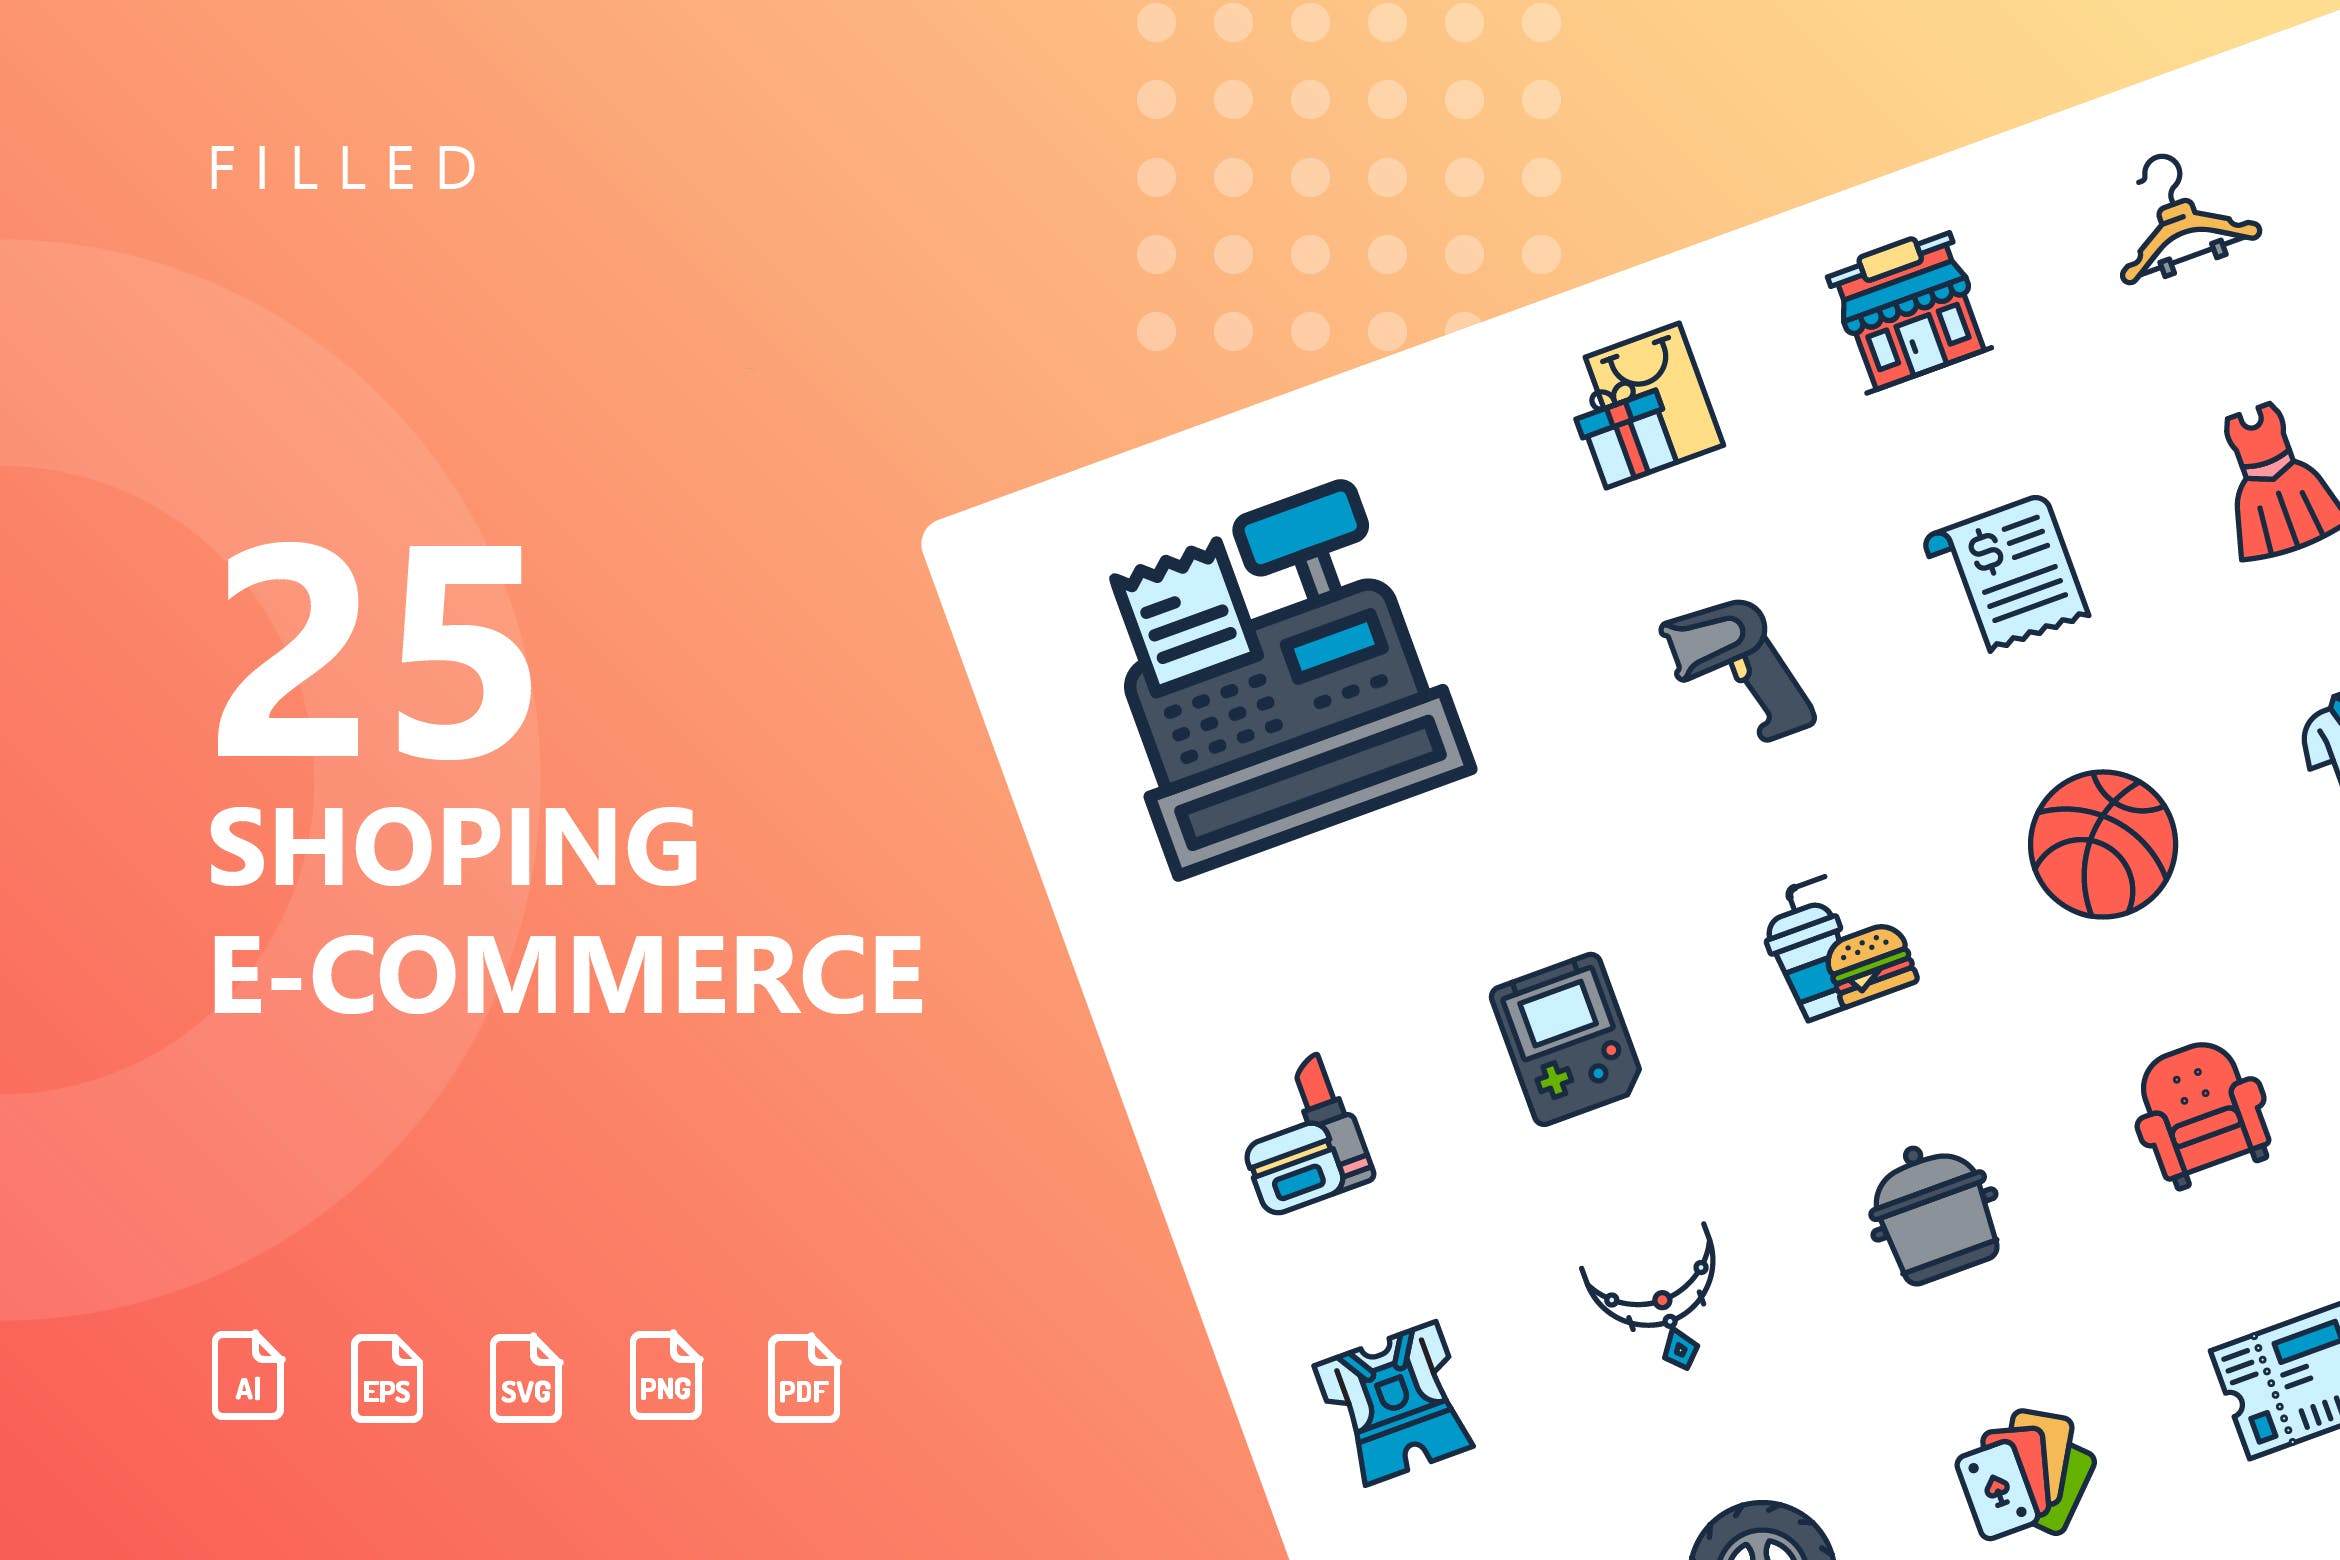 25枚网上购物电子商务矢量填充色第一素材精选图标v2 Shopping E-Commerce Filled Icons插图